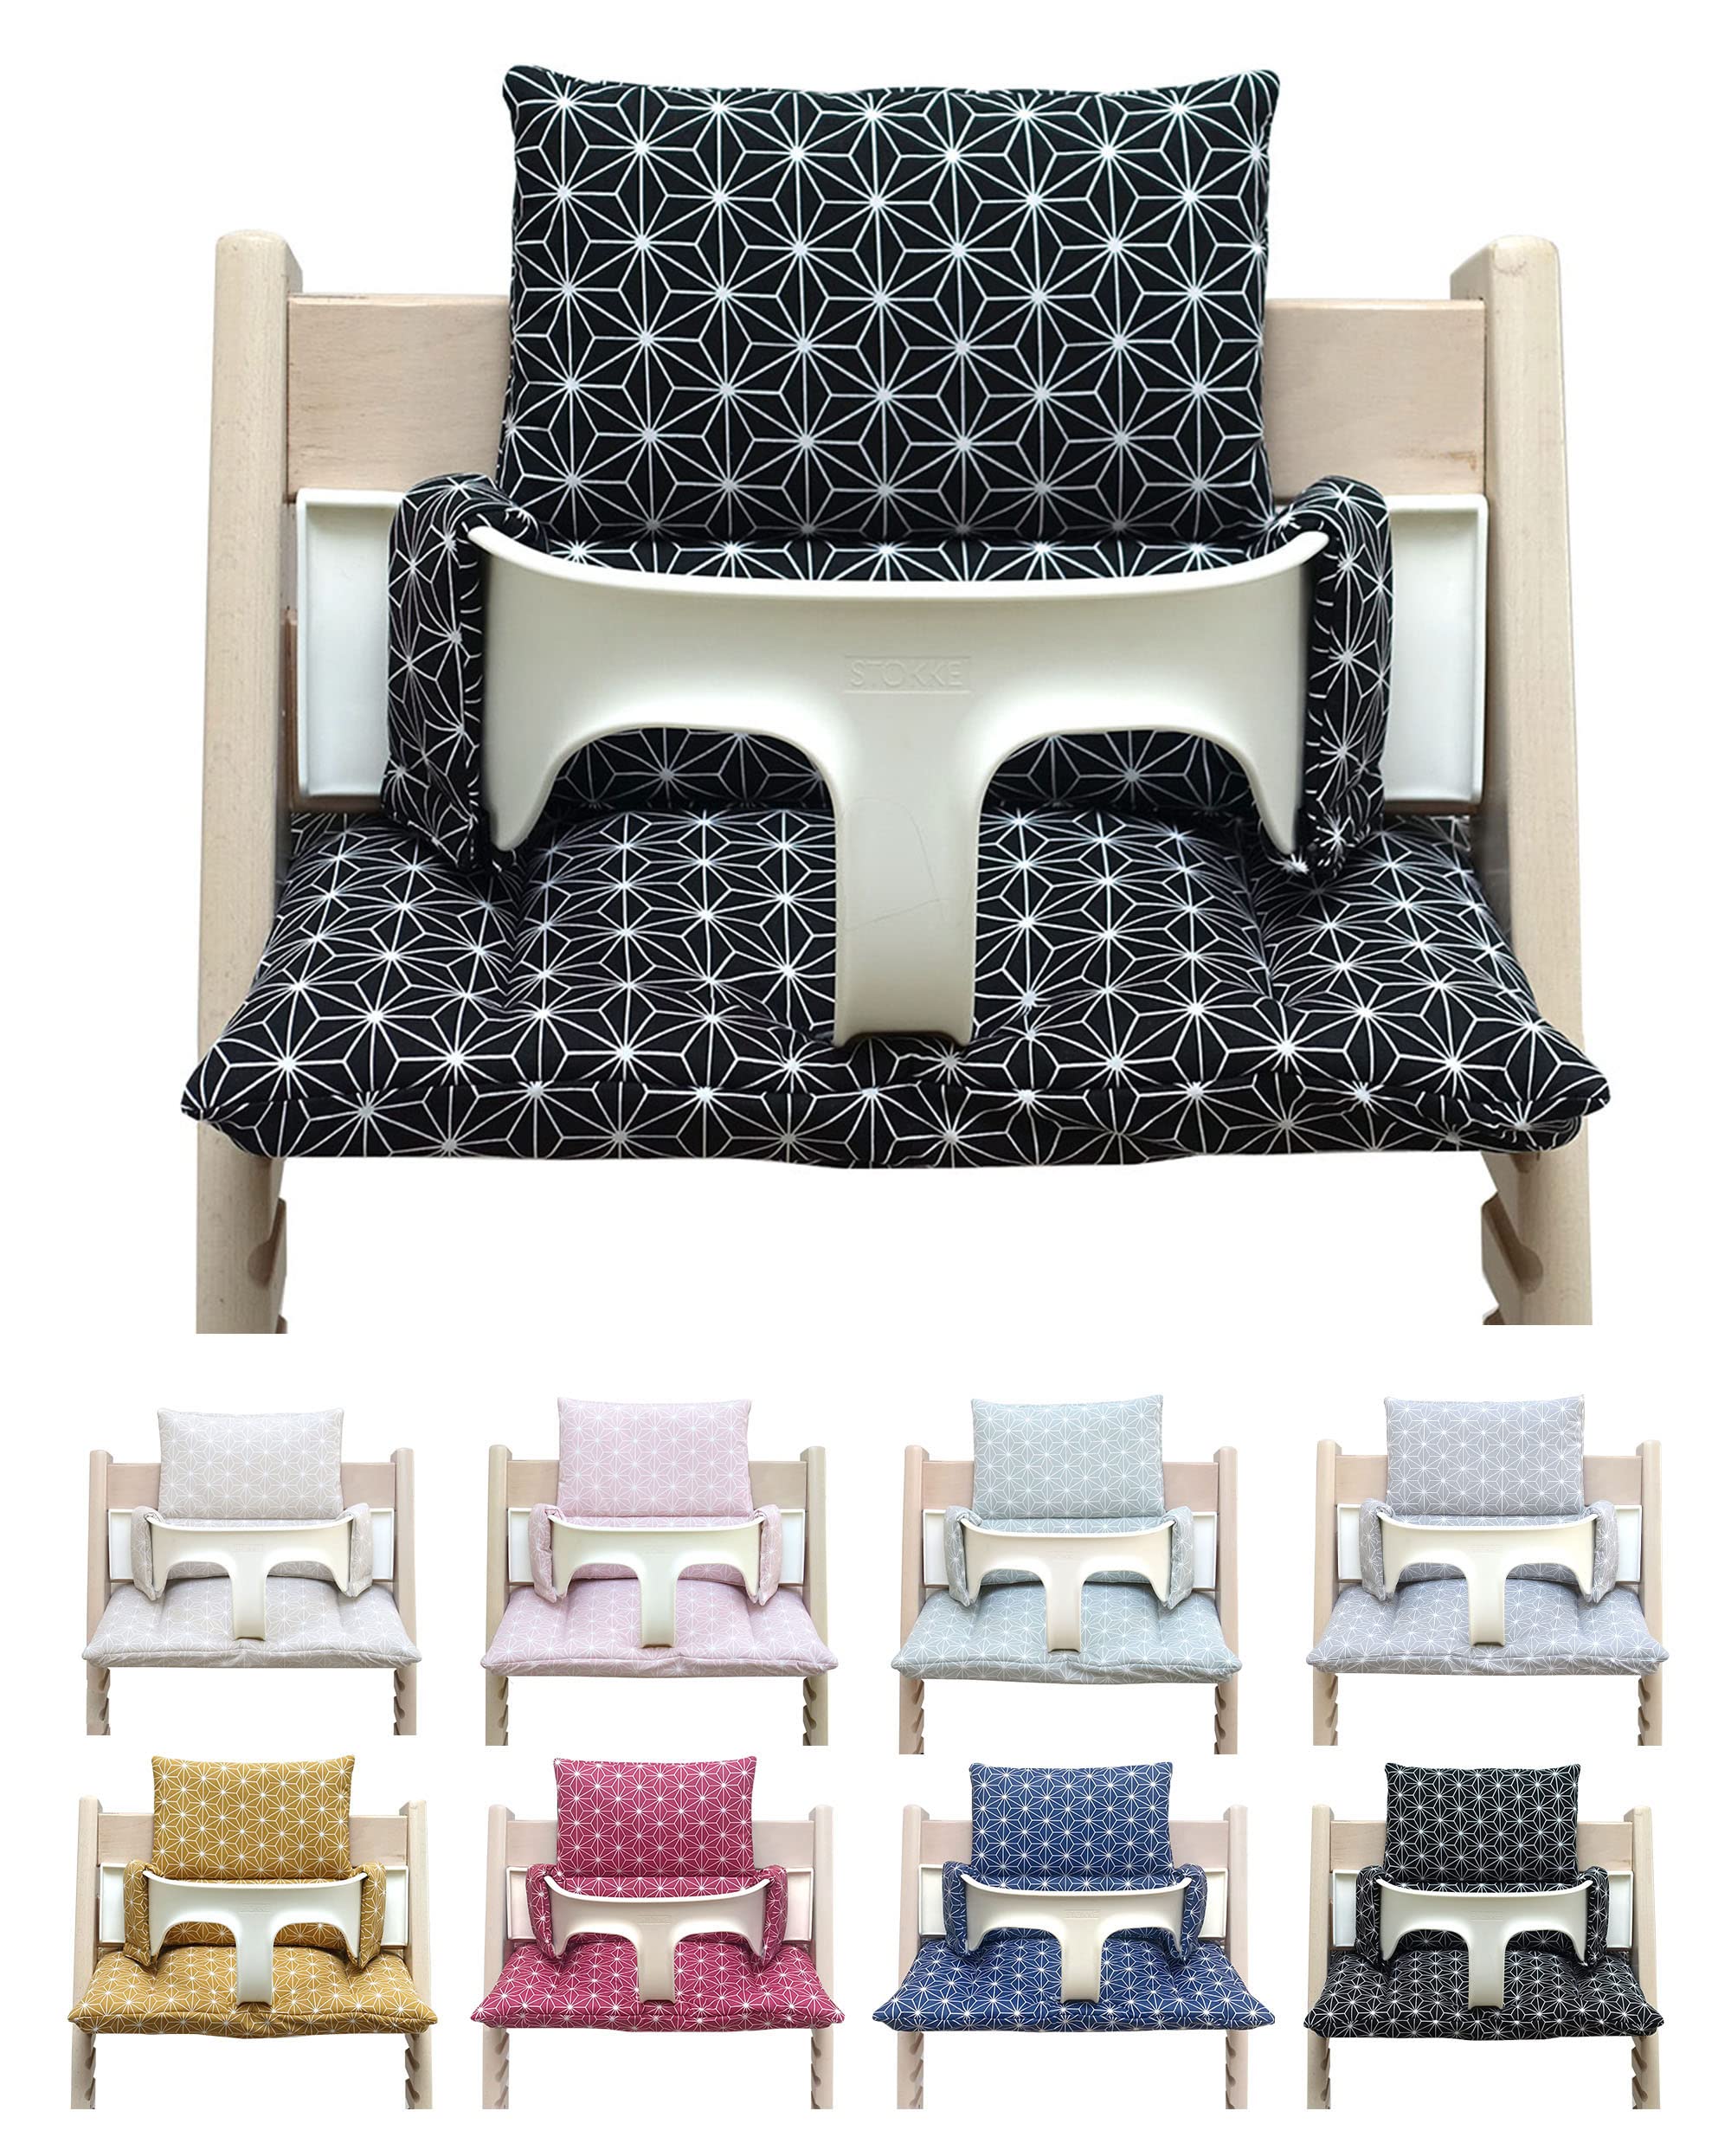 Blausberg Baby - Sitzkissen Set ABWASCHBAR kompatibel mit Stokke Tripp Trapp Hochstuhl Materialien Oek-Tex Standard zertifiziert - Made in Germany - Happy Star Schwarz)